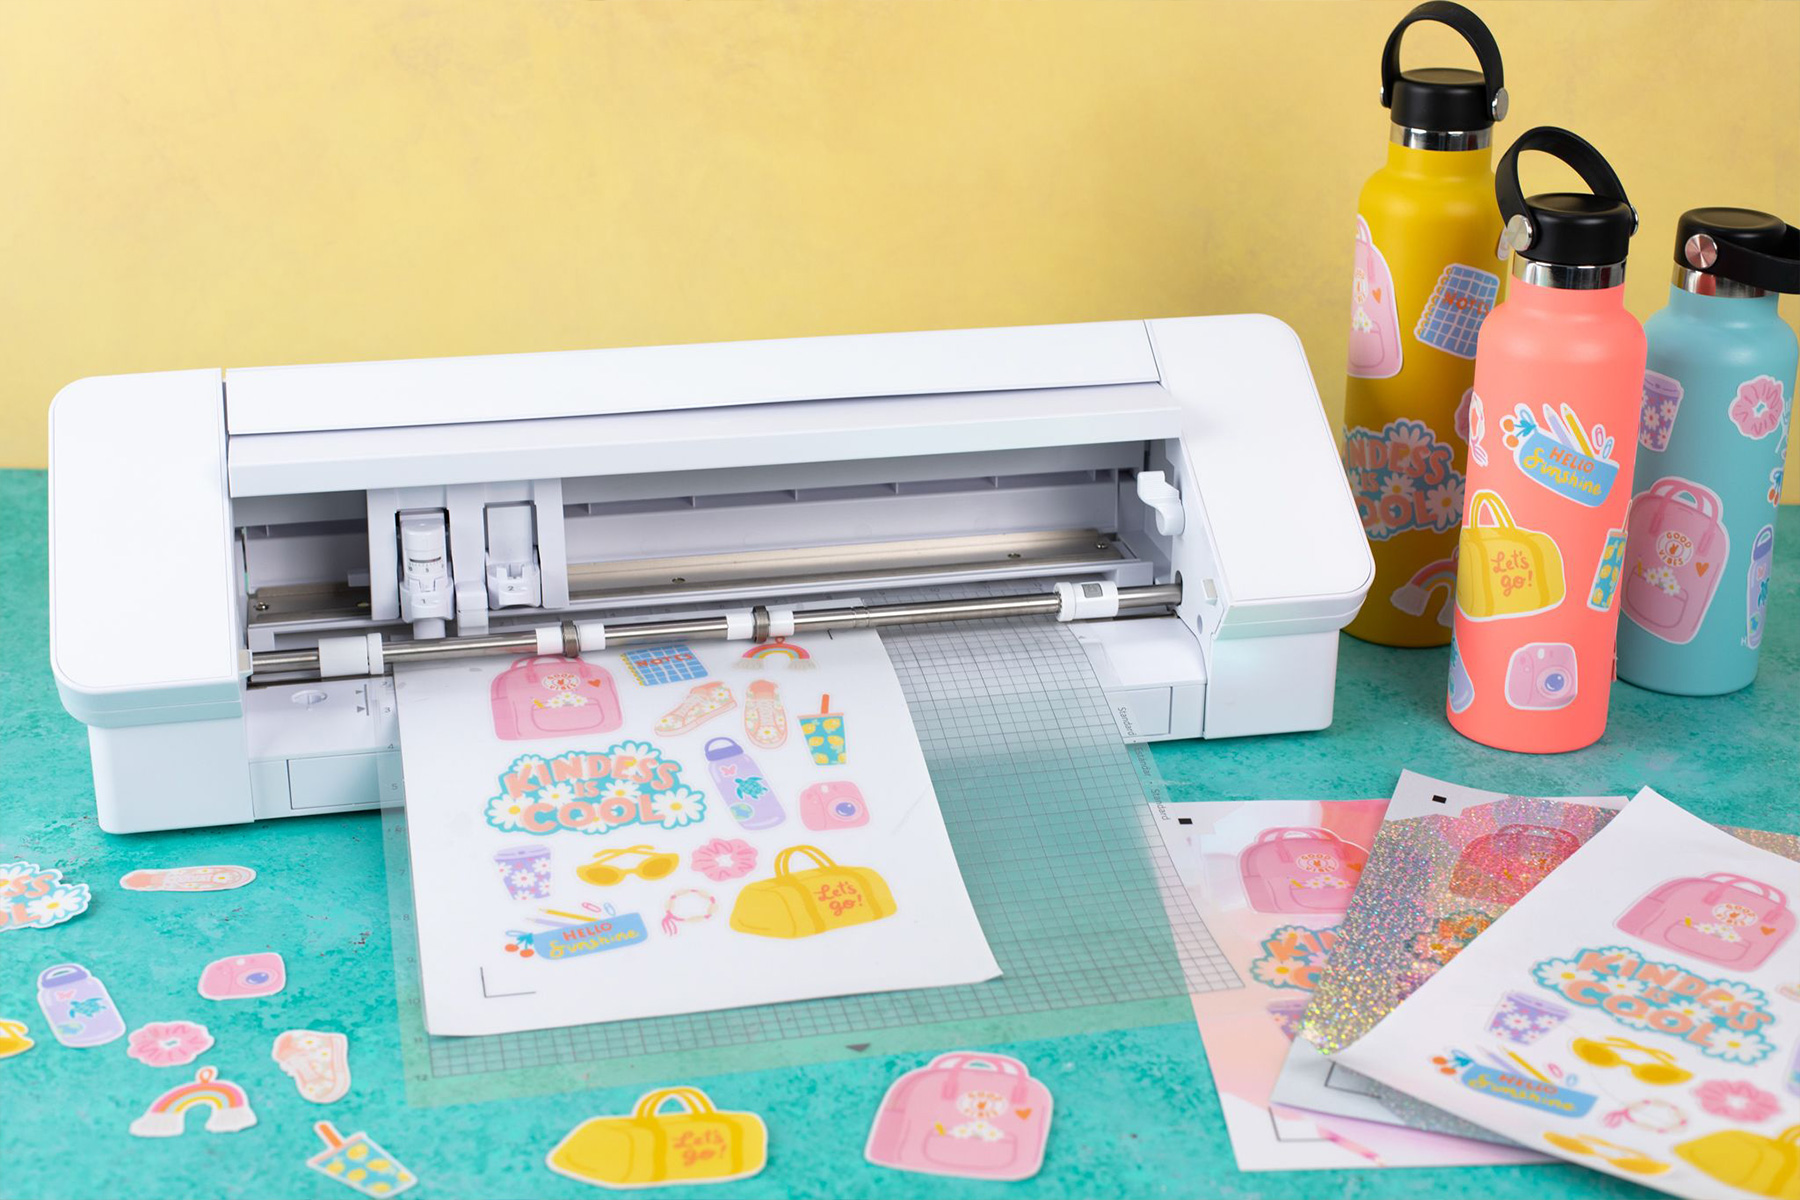 Aufkleber können mit der Print & Cut Funktion schnell gedruckt udn ausgeschnitten werden.